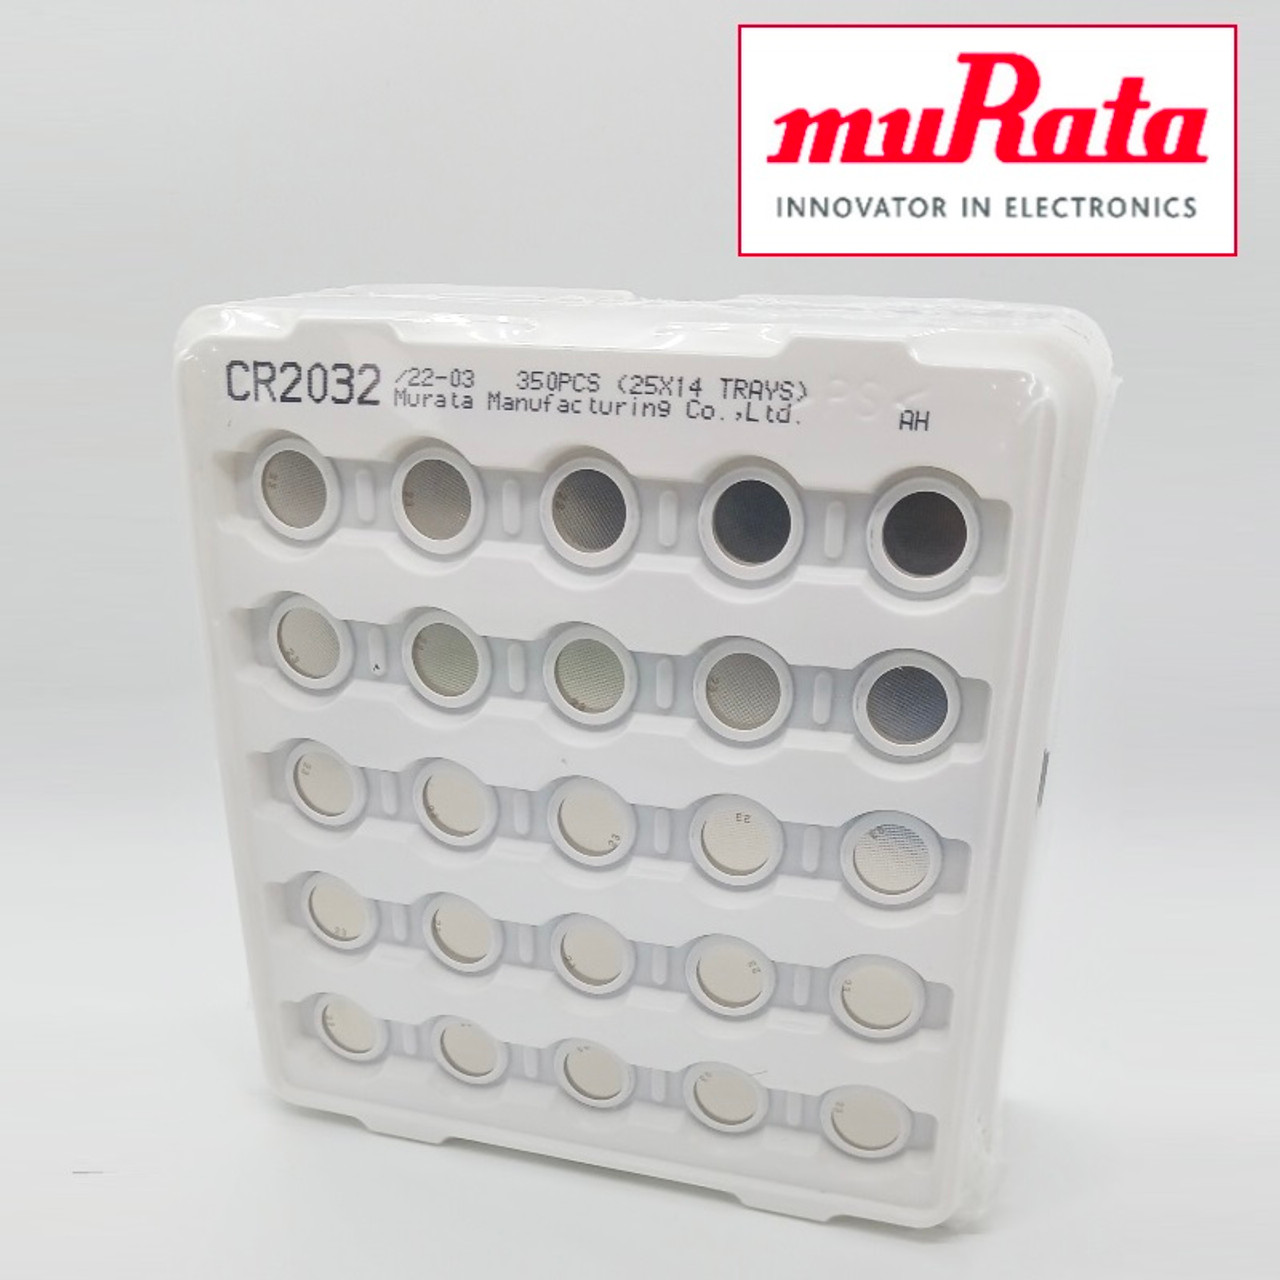 Sony/Murata CR2032, 3 Volt 220mAh Lithium Coin Cell